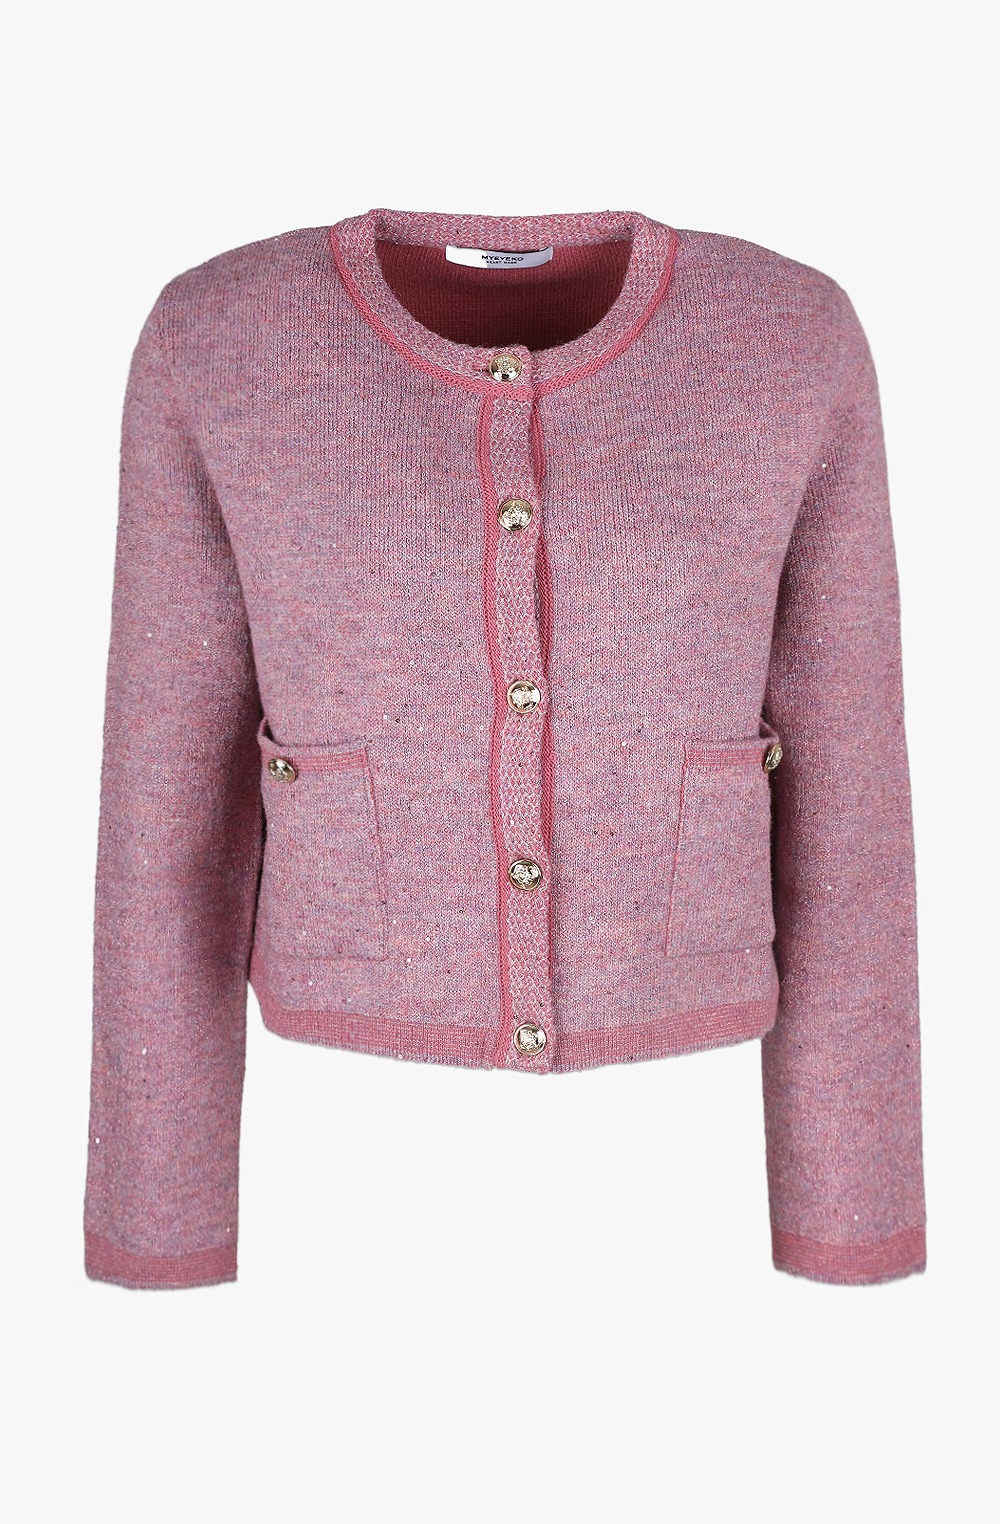 HIGH QUALITY LINE - Sequin Embellished Knit Jacket (PLUM PINK)